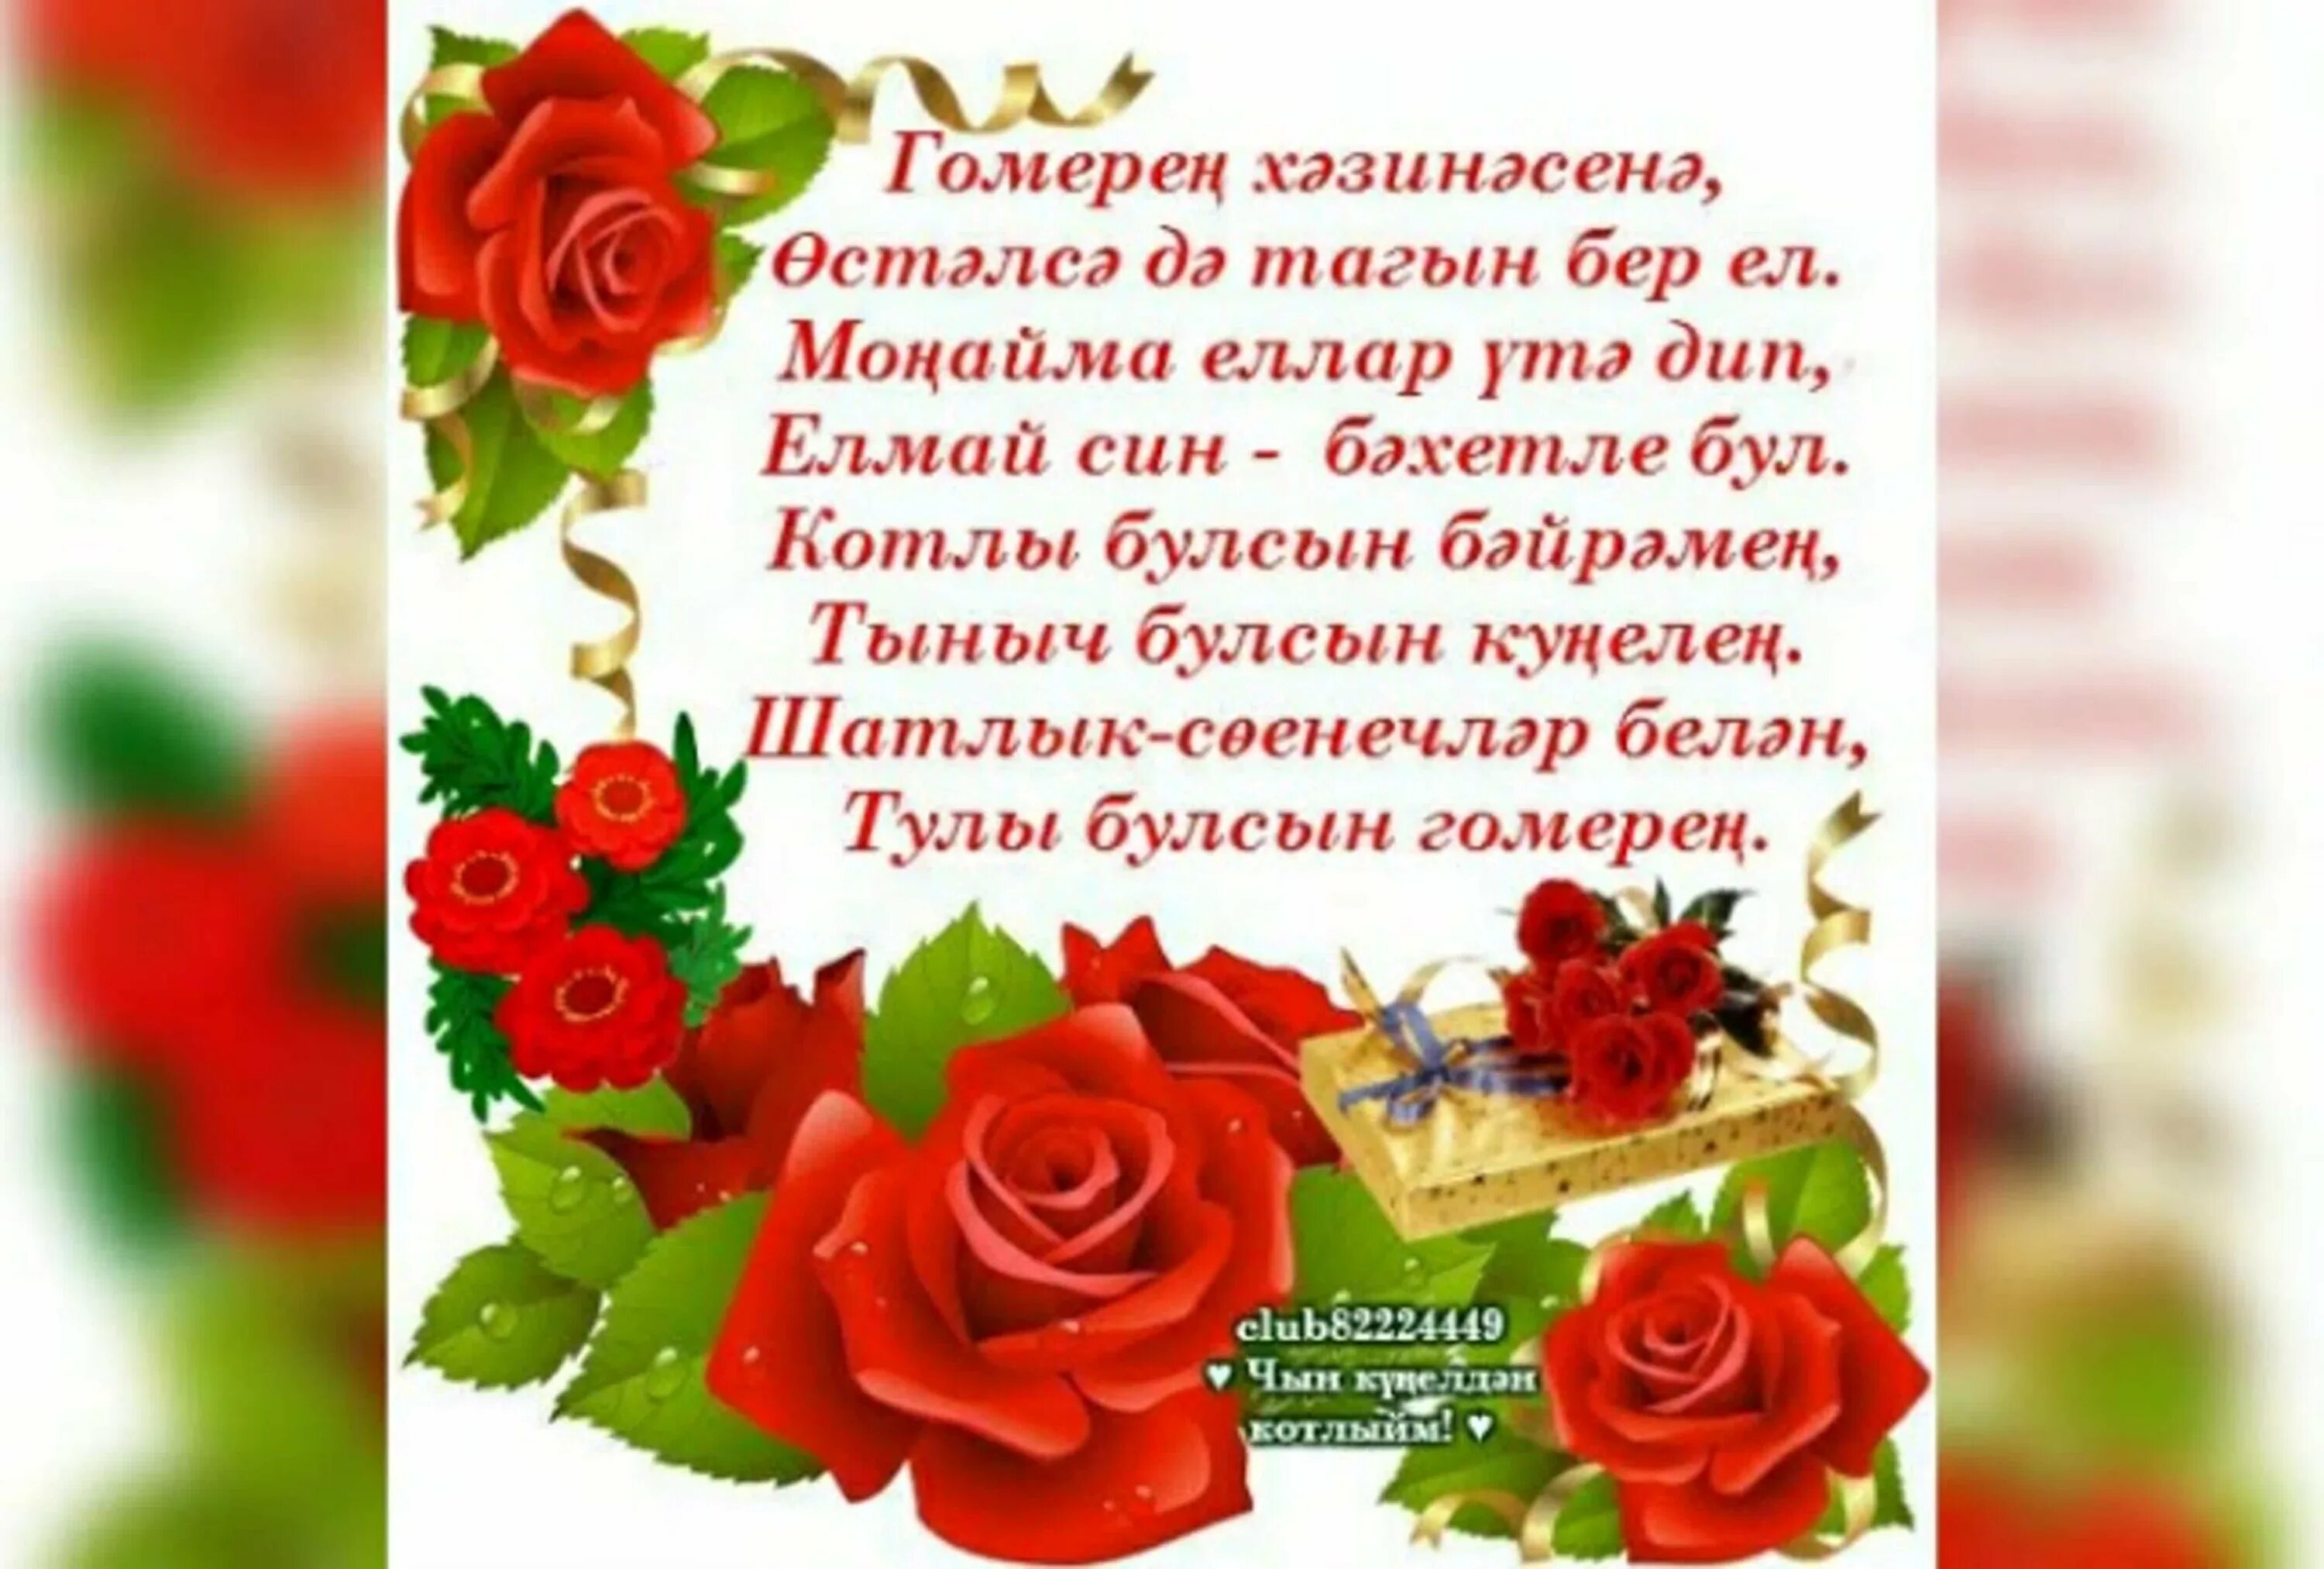 Песни кызым туган конен. Поздравления с днём рождения на татарском языке. Поздравление на татарском языке. Татарские поздравления с днем рождения. Поздравления с днём рождения женщине на татарском языке.